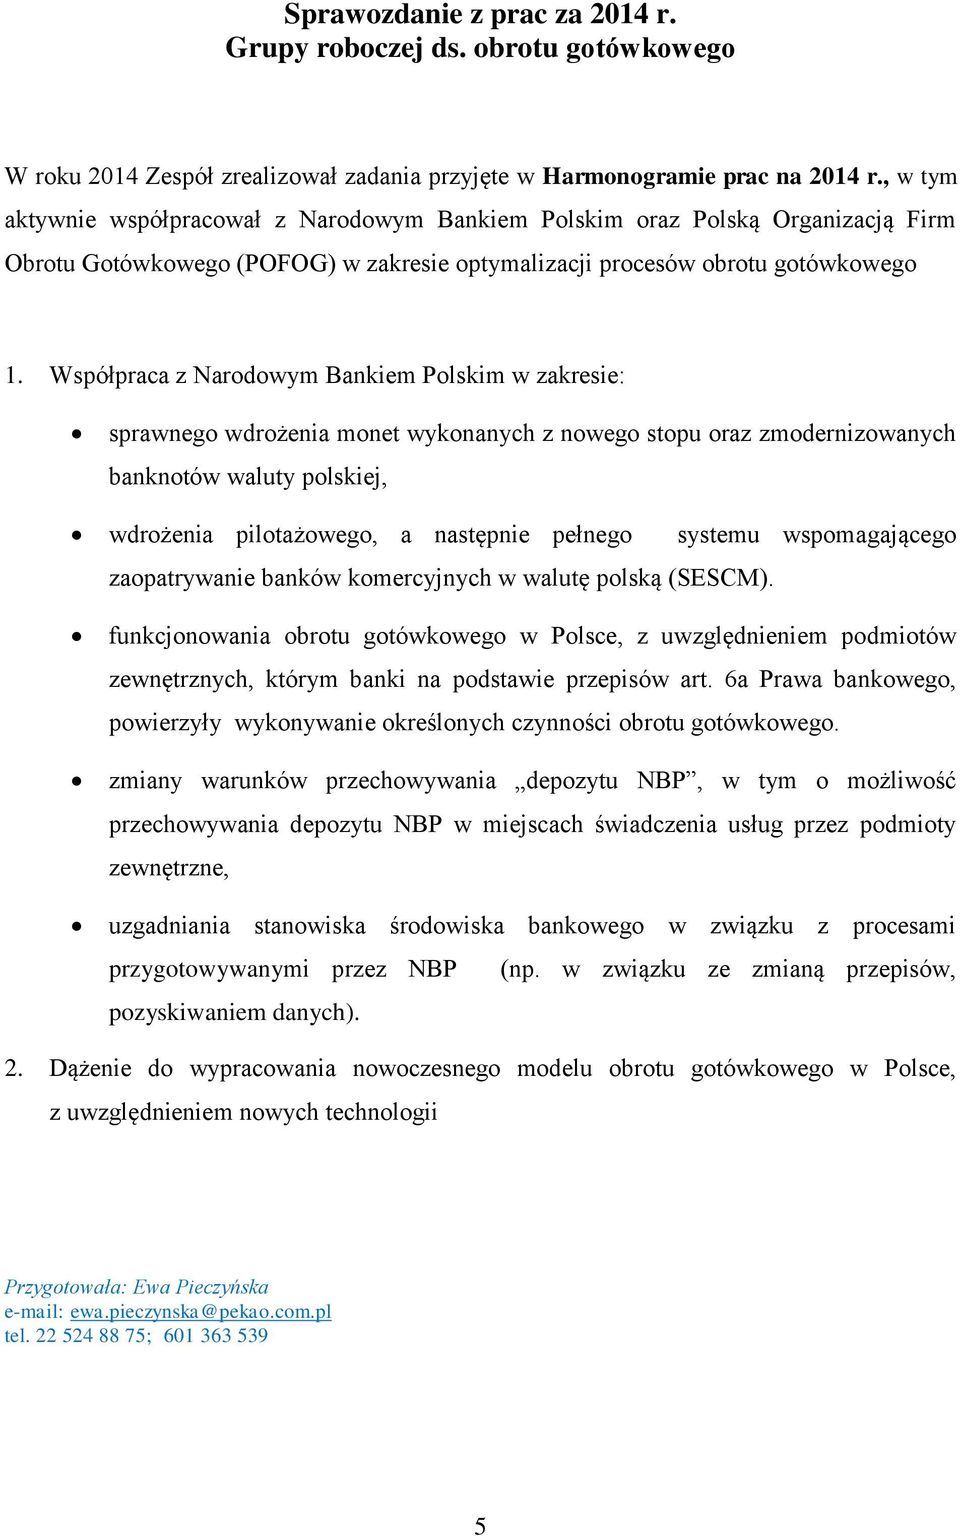 Współpraca z Narodowym Bankiem Polskim w zakresie: sprawnego wdrożenia monet wykonanych z nowego stopu oraz zmodernizowanych banknotów waluty polskiej, wdrożenia pilotażowego, a następnie pełnego